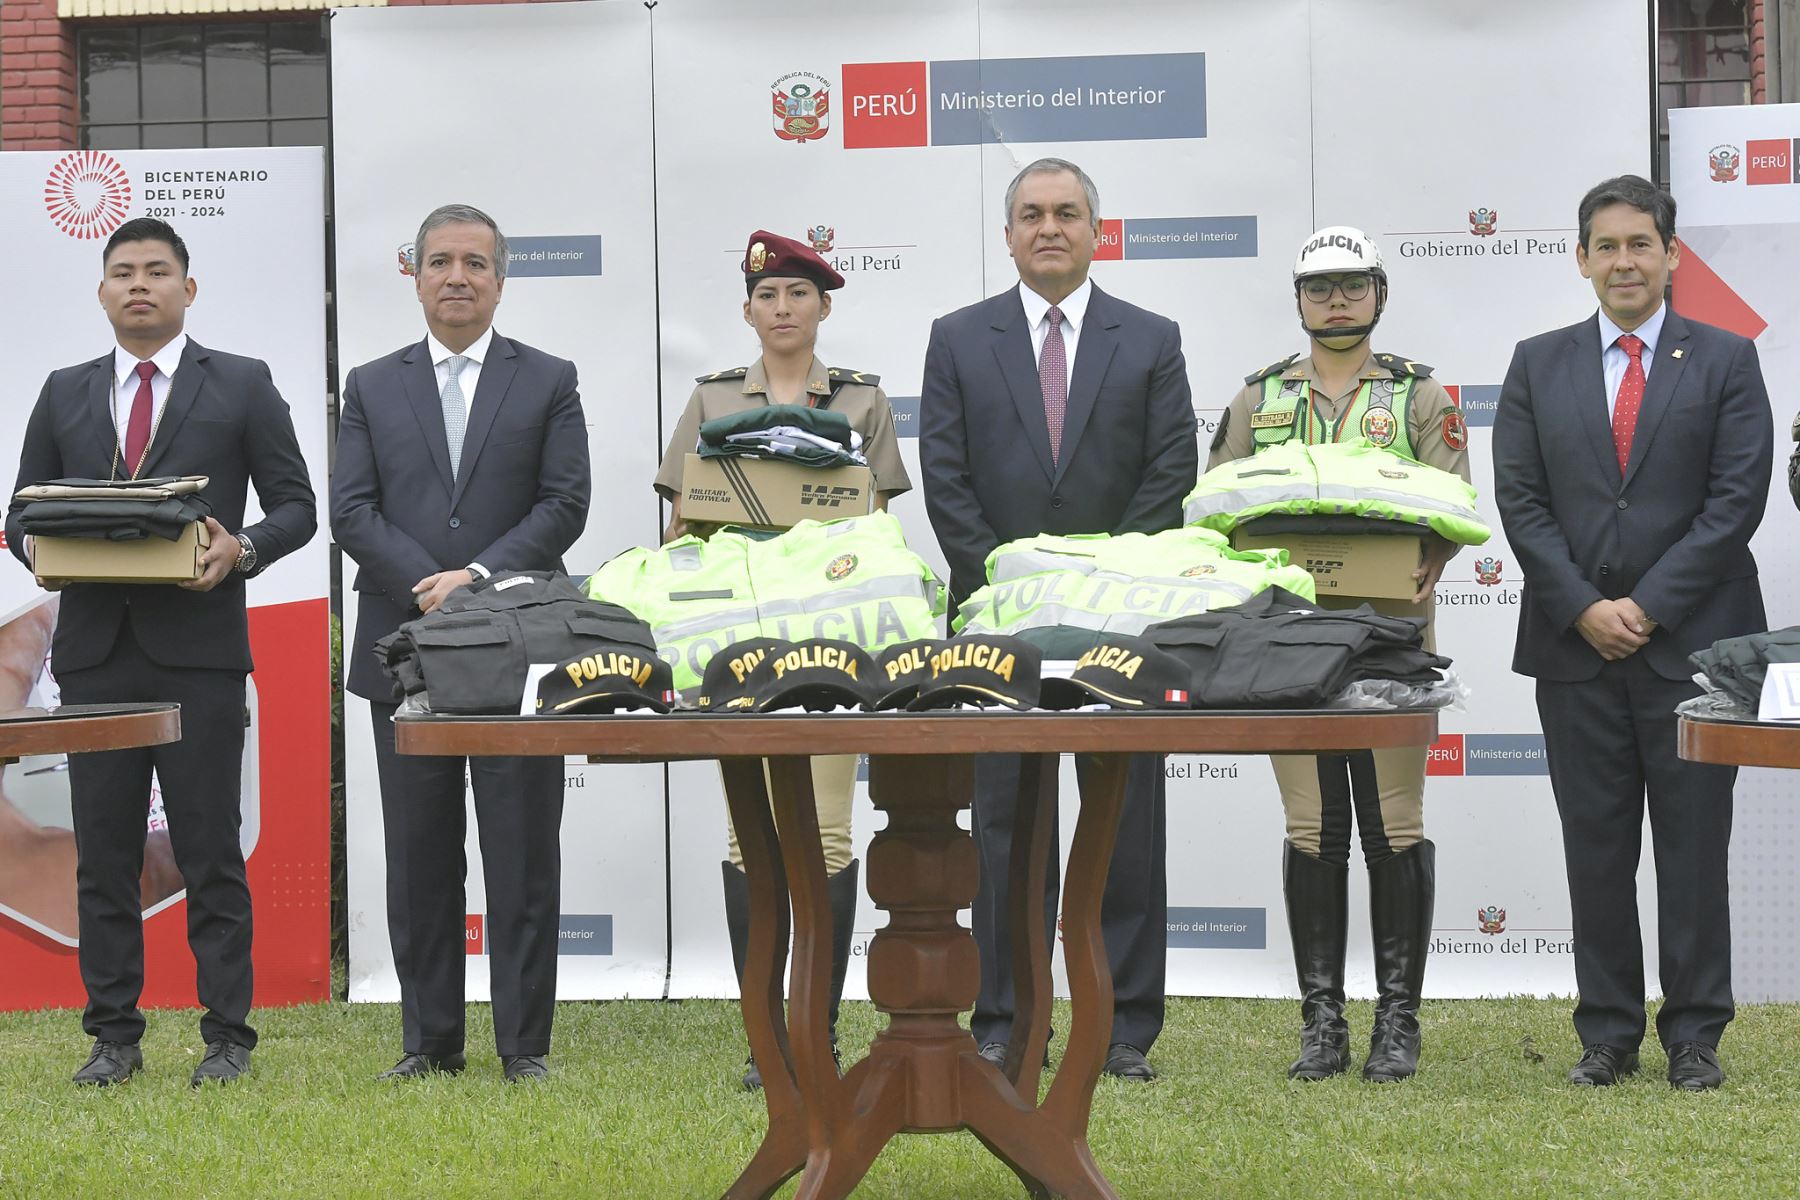 El Ministerio del Interior supervisó la entrega de más de 1.7 millones de bienes textiles y calzado a diversas unidades de la Policía Nacional del Perú de las regiones Lima y Callao.